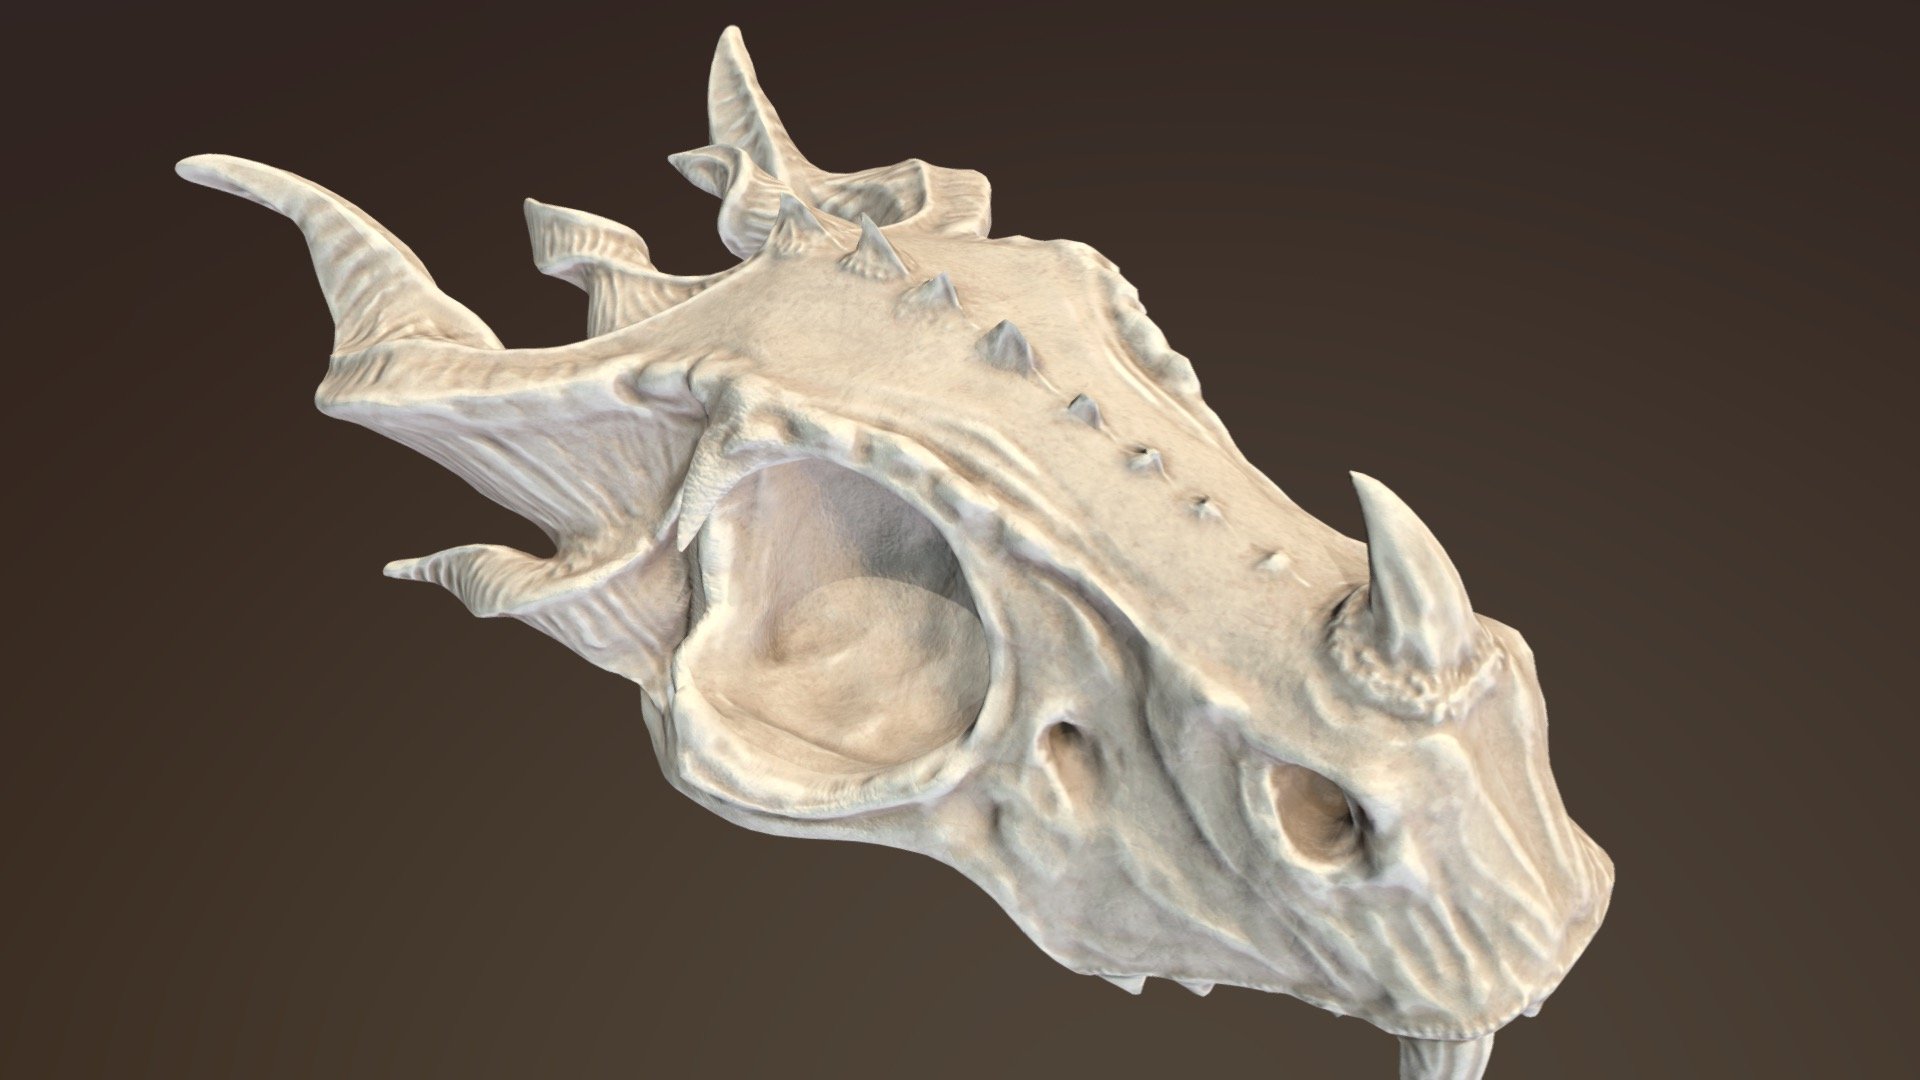 done for practice - Dragon Skull - 3D model by emilymeganx 3d model